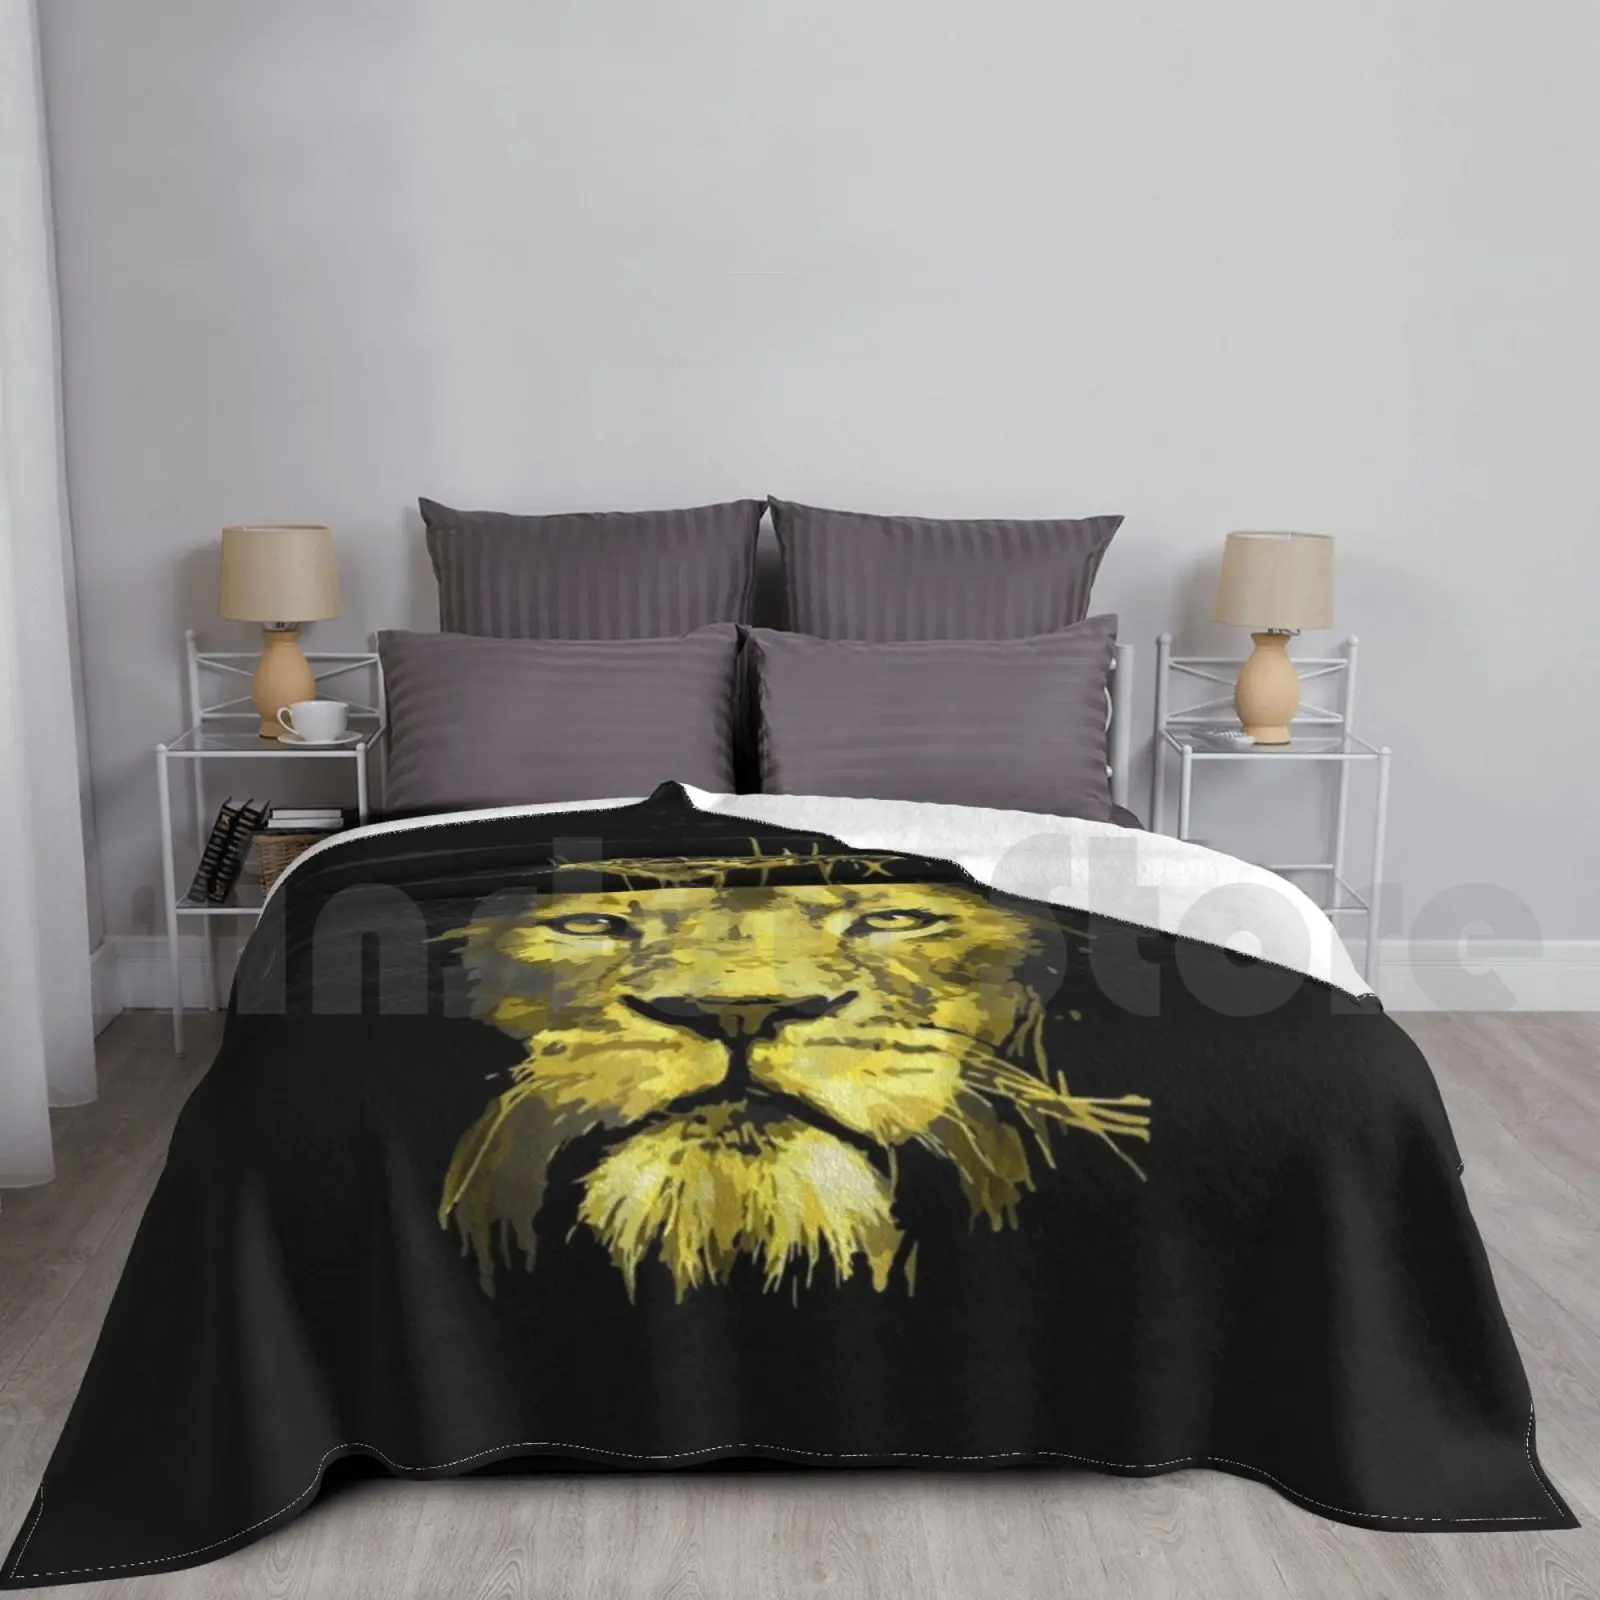 

Lion Of Judah Blanket For Sofa Bed Travel Lion Judah Jesus Christ Religion Religious Animals Wild Faith